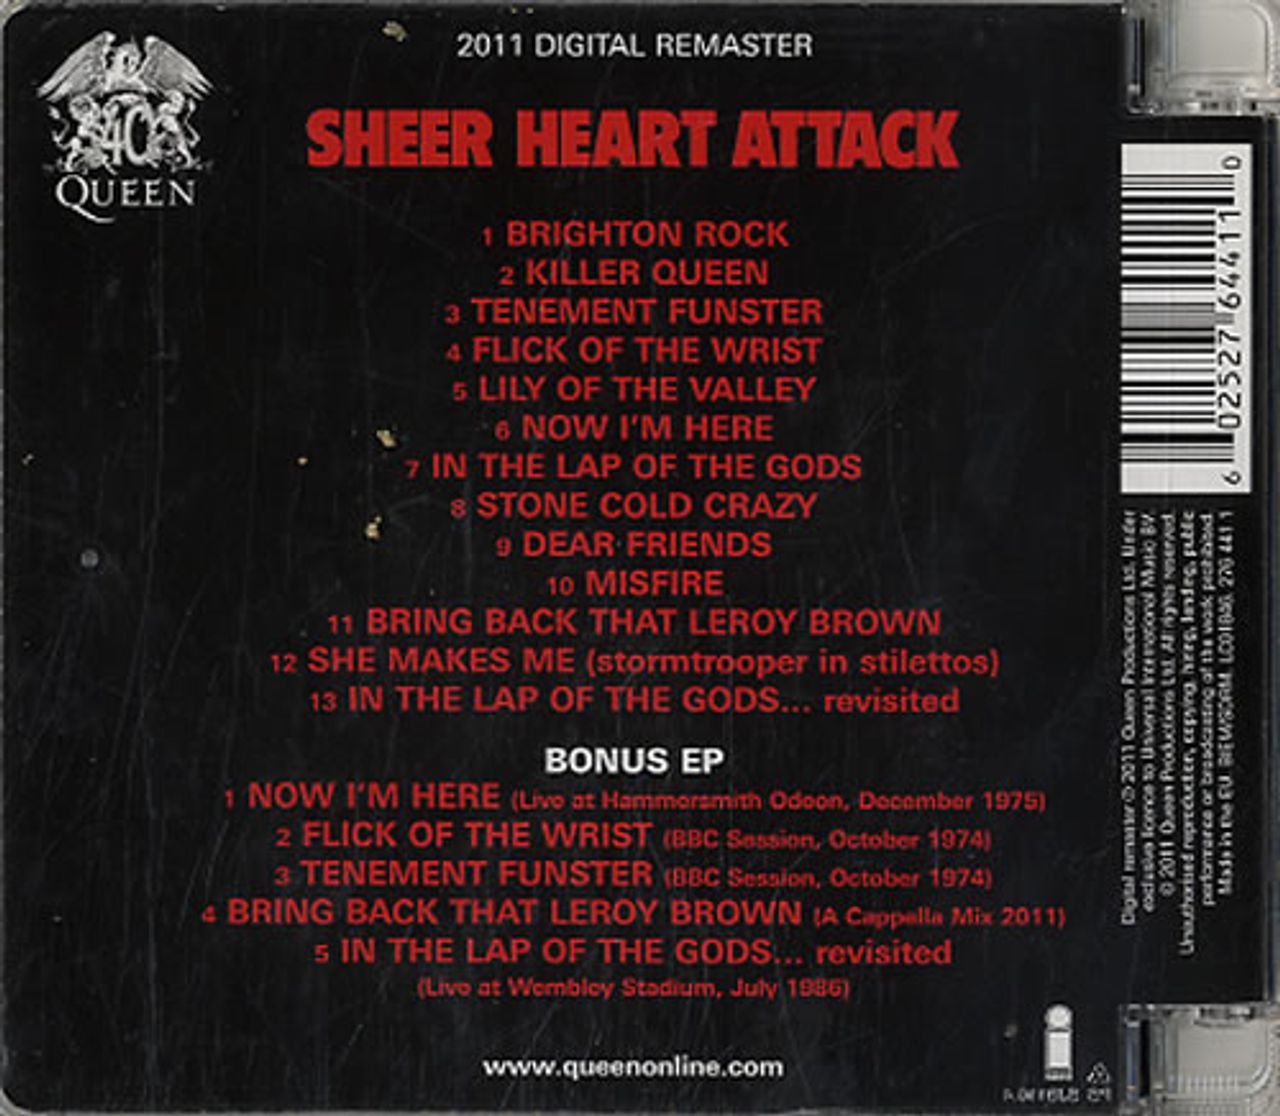 Queen Sheer Heart Attack UK 2-CD album set — RareVinyl.com